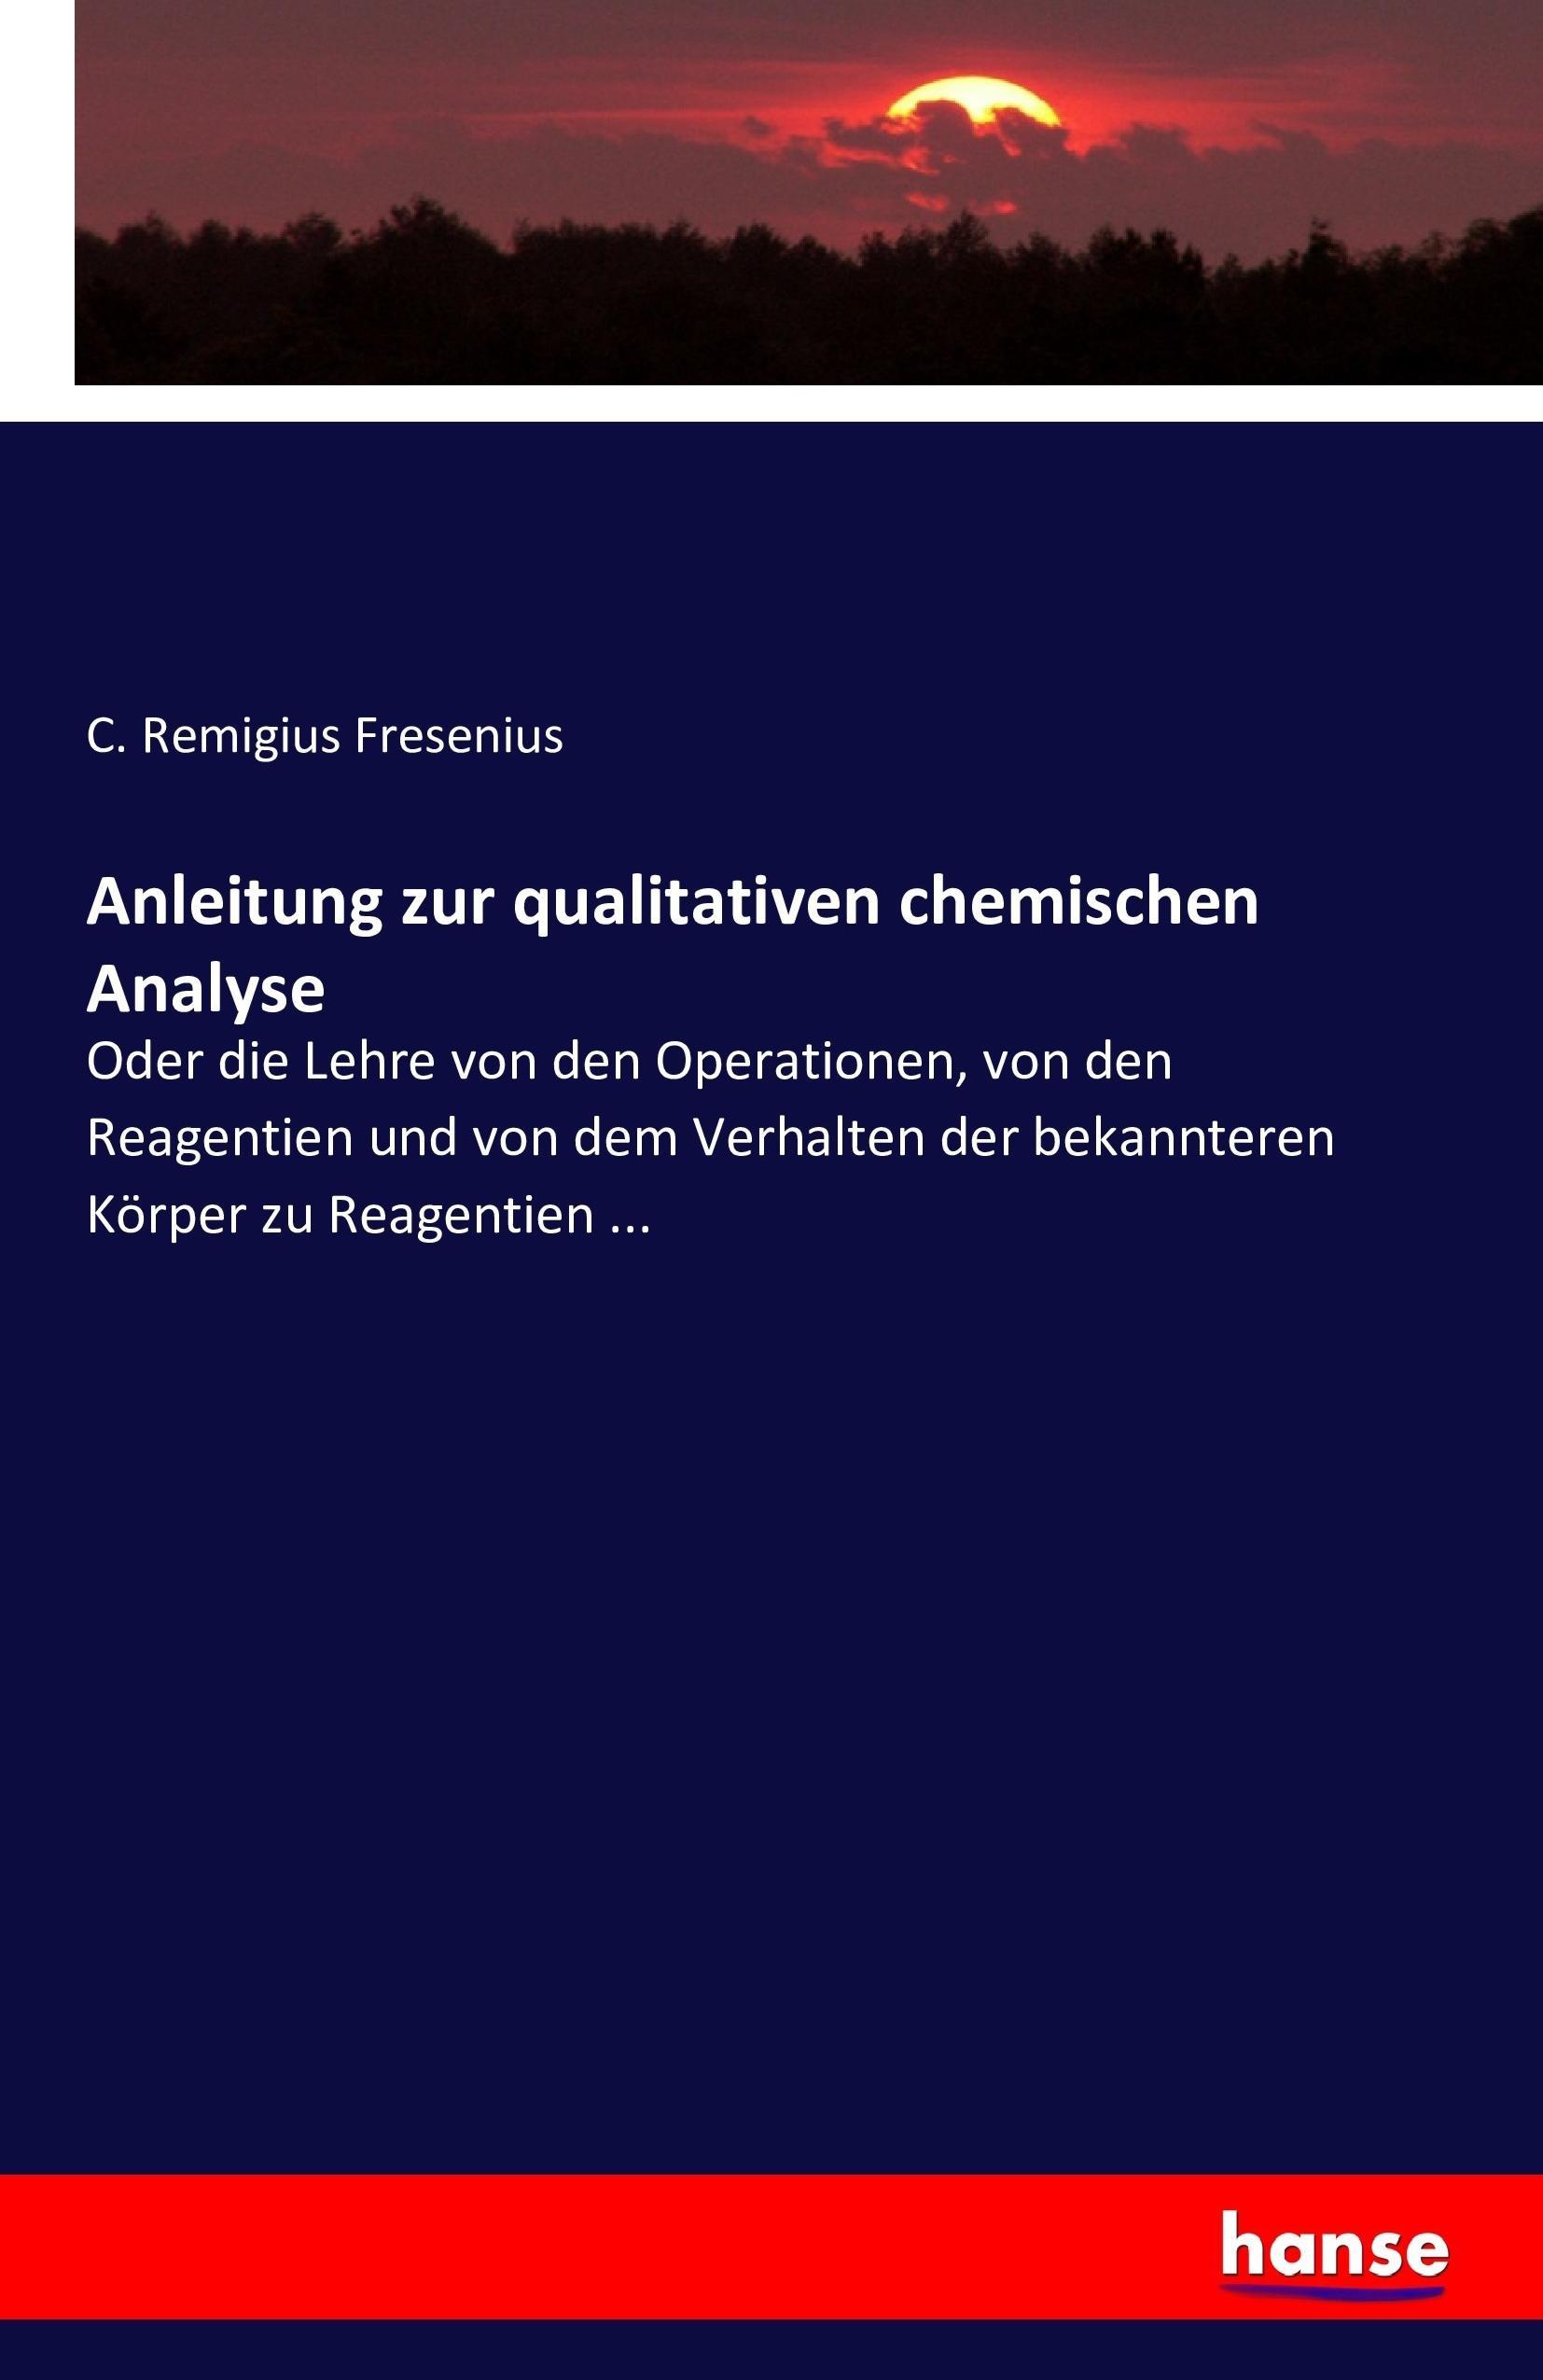 Anleitung zur qualitativen chemischen Analyse - Fresenius, C. Remigius